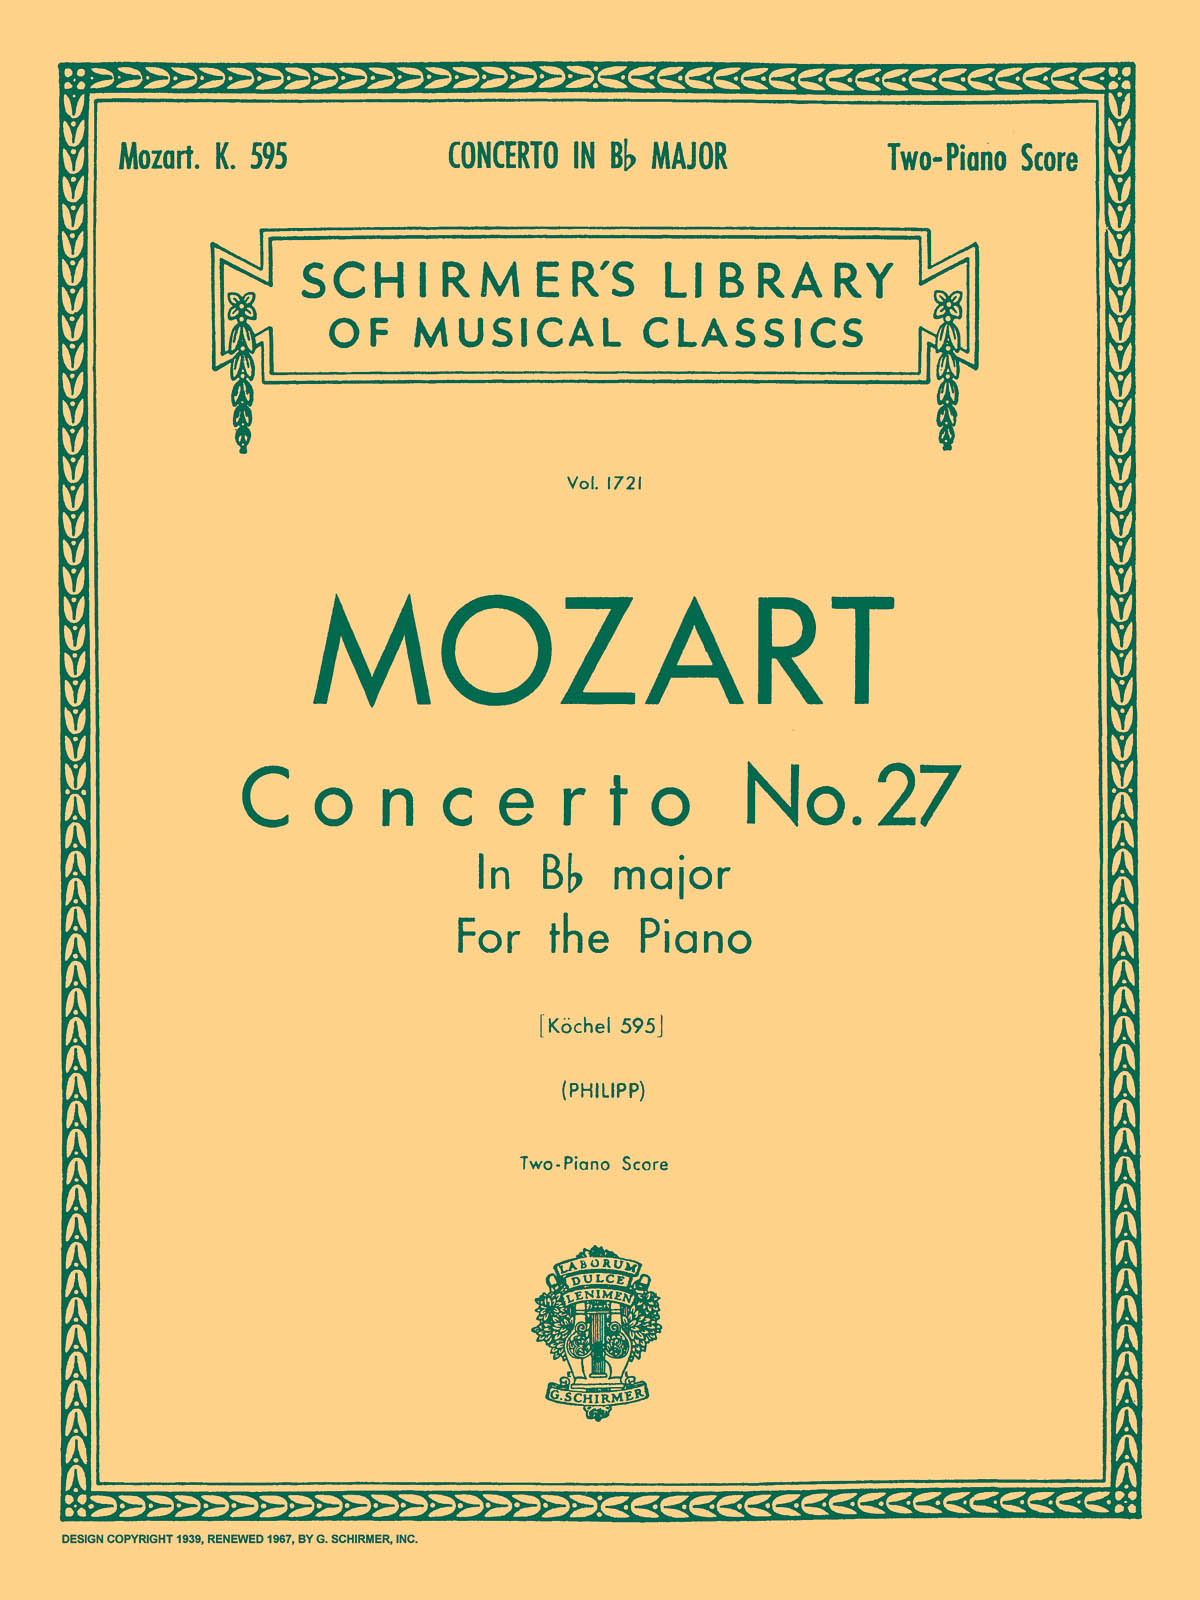 Mozart: Concerto No. 27 in Bb, K.595